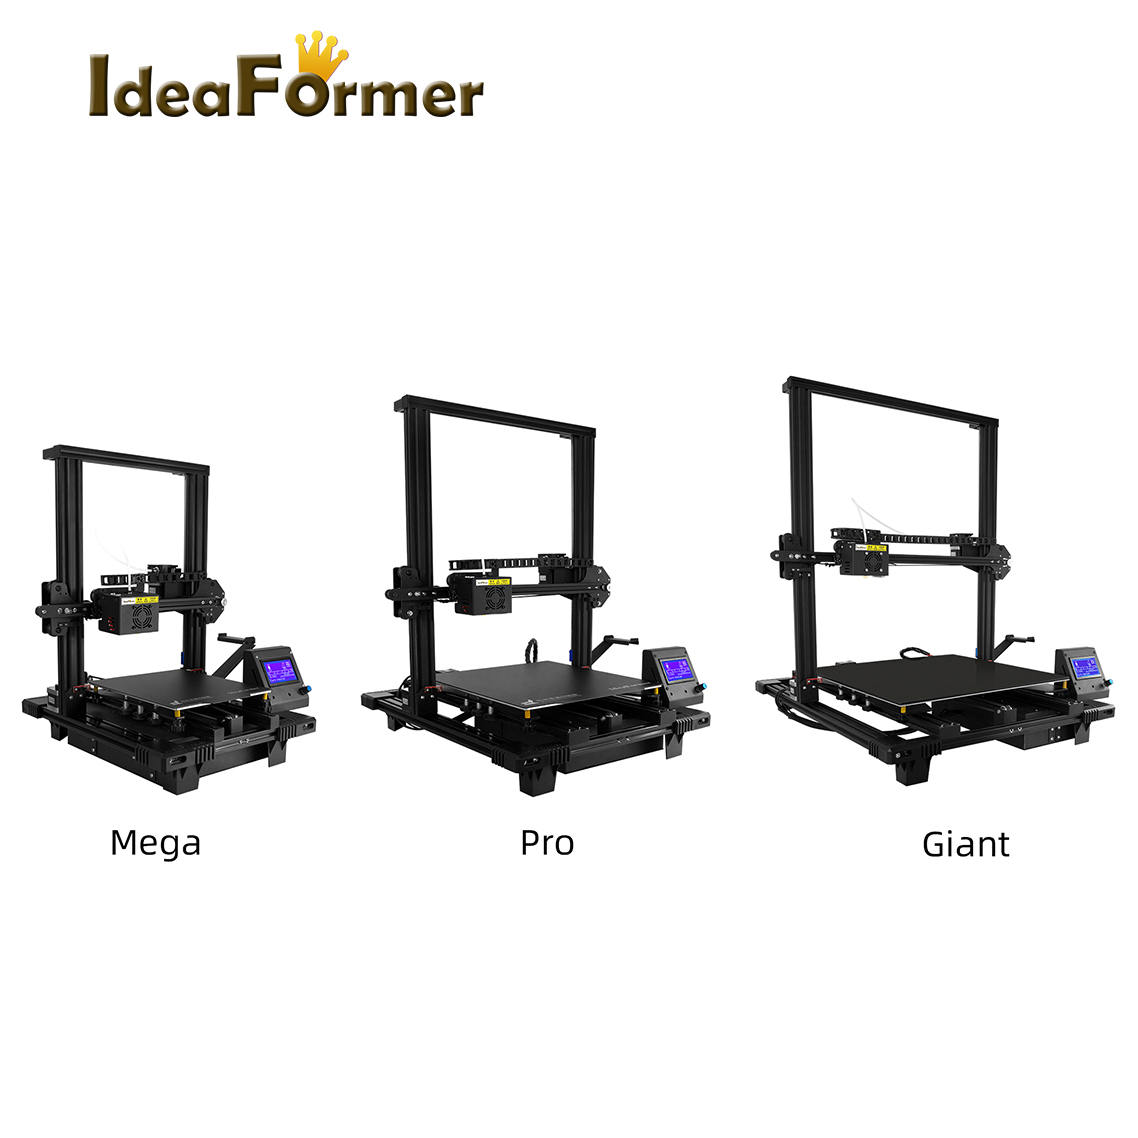  FDM 3D Printer Ideaformer Mega Pro Giant DIY Kit Self-Assemble